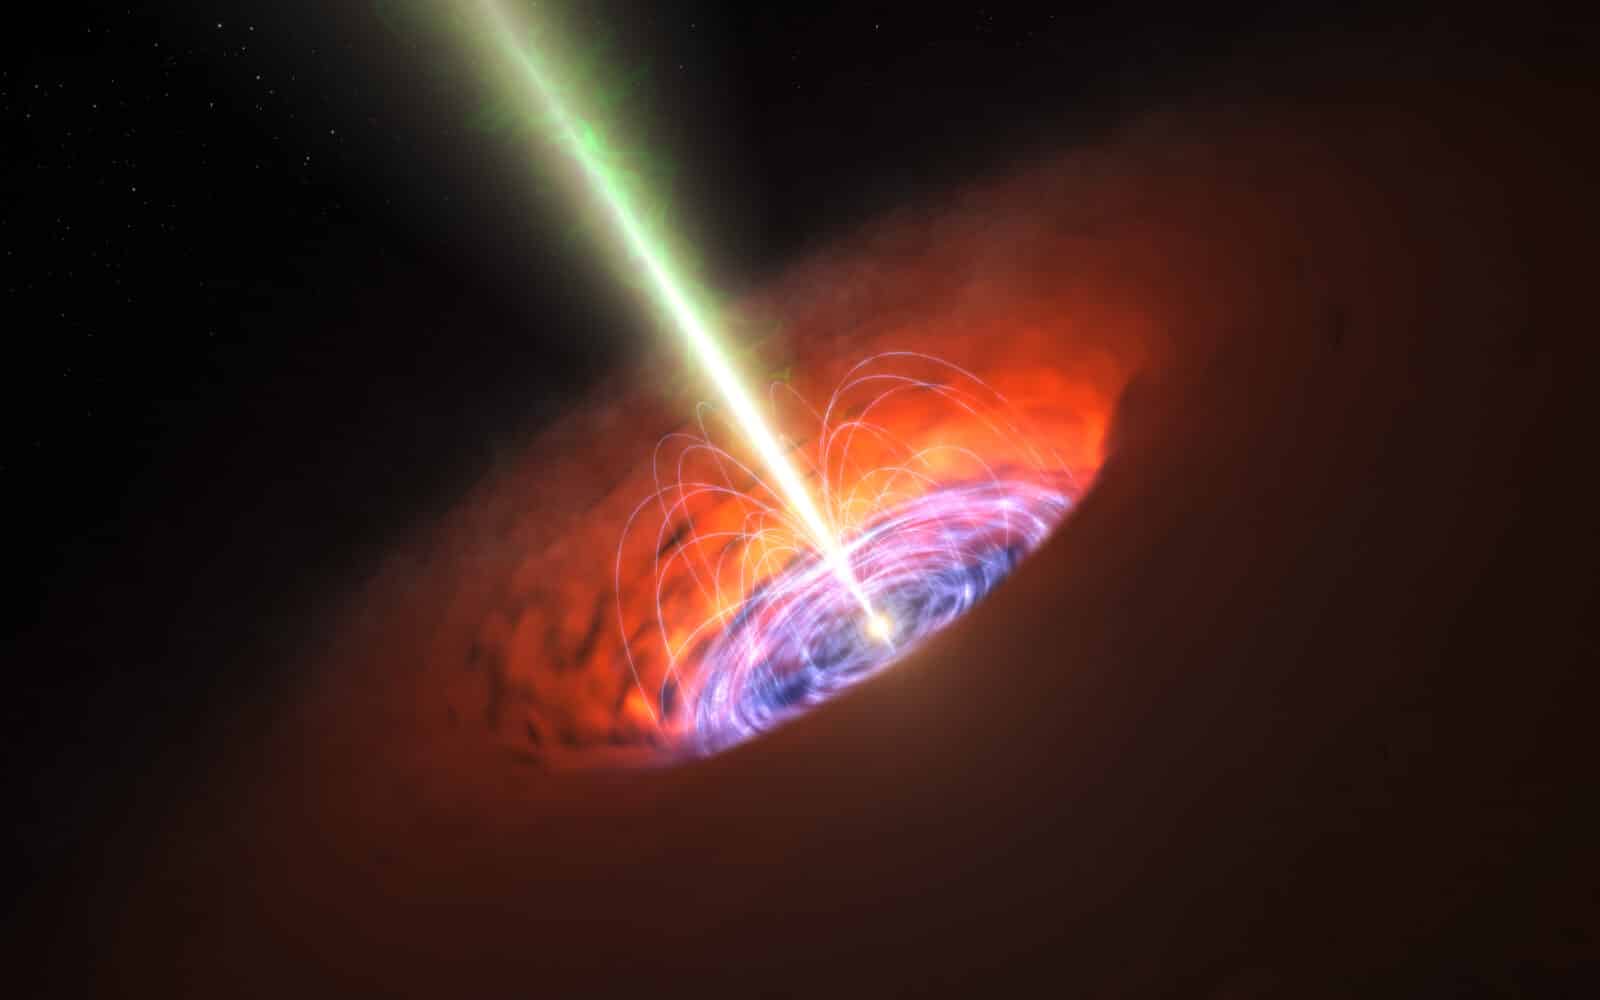 ブラックホールの降着円盤、初の精密な測定に成功